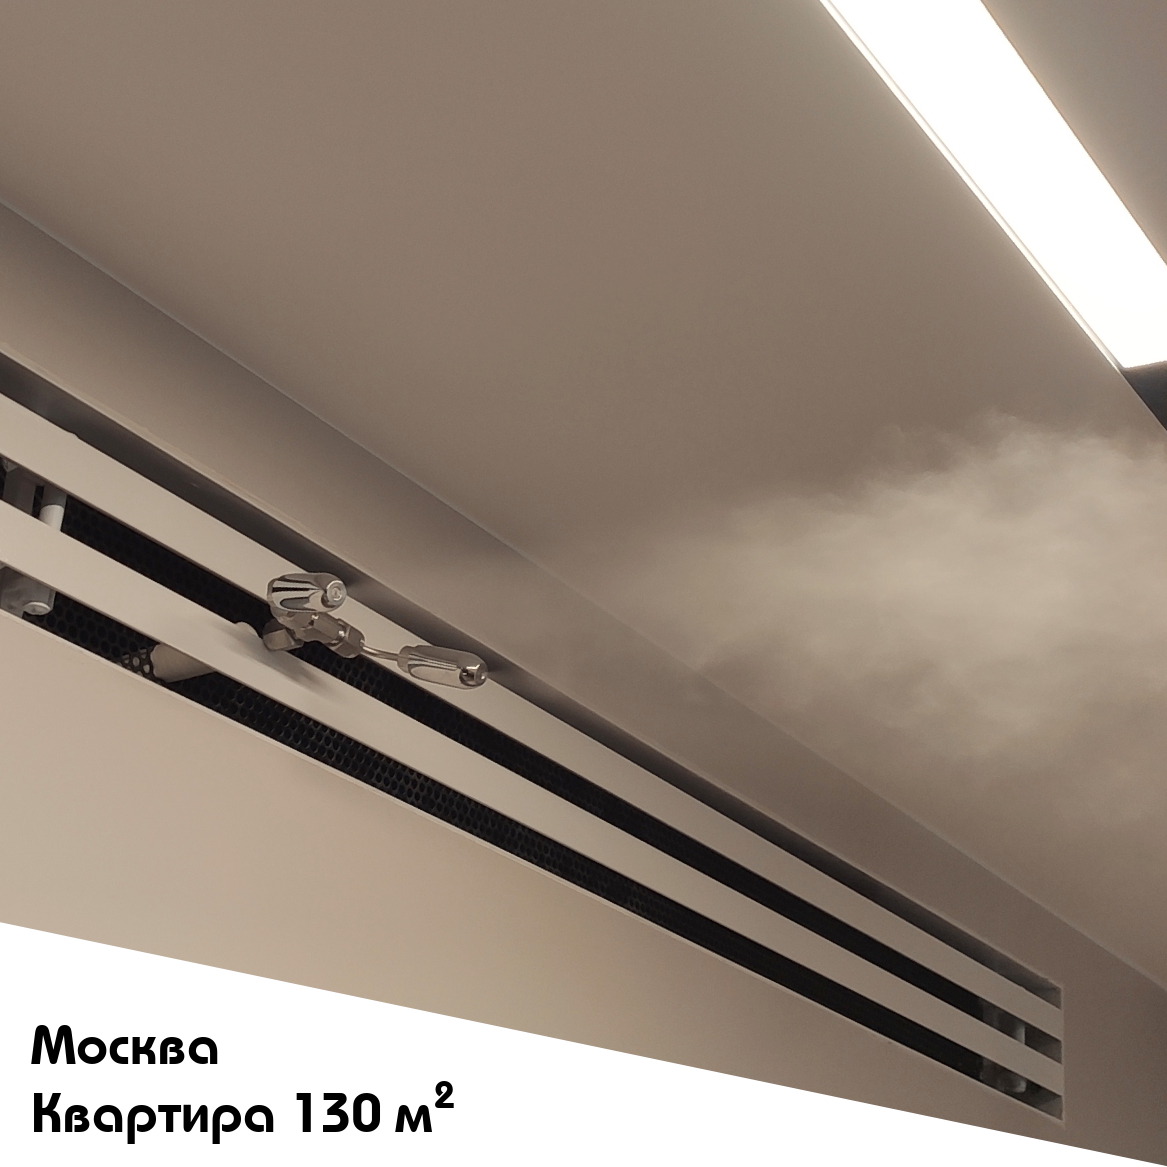 Выполненный объект. Система увлажнения для квартиры 130 м2 в Москве